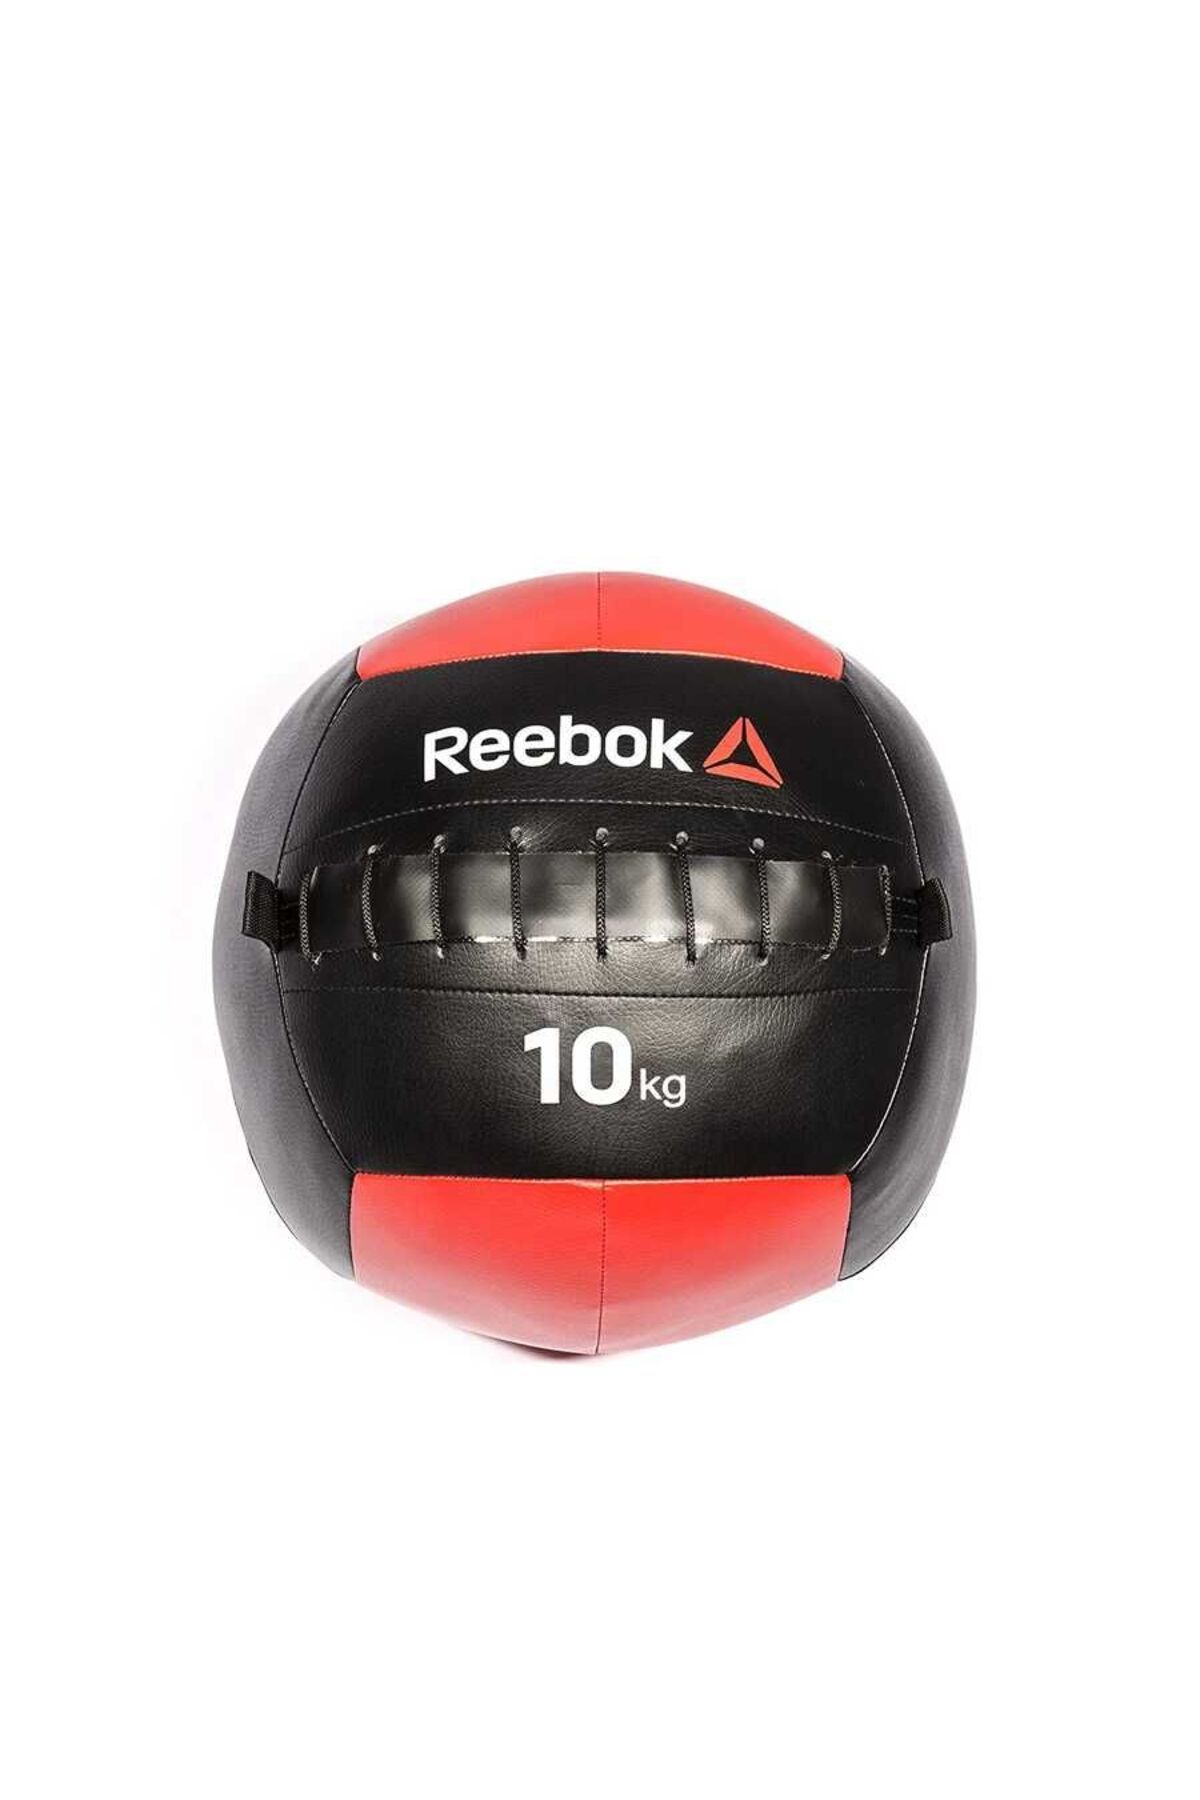 Reebok 10 Kg Softball Rsb-10183